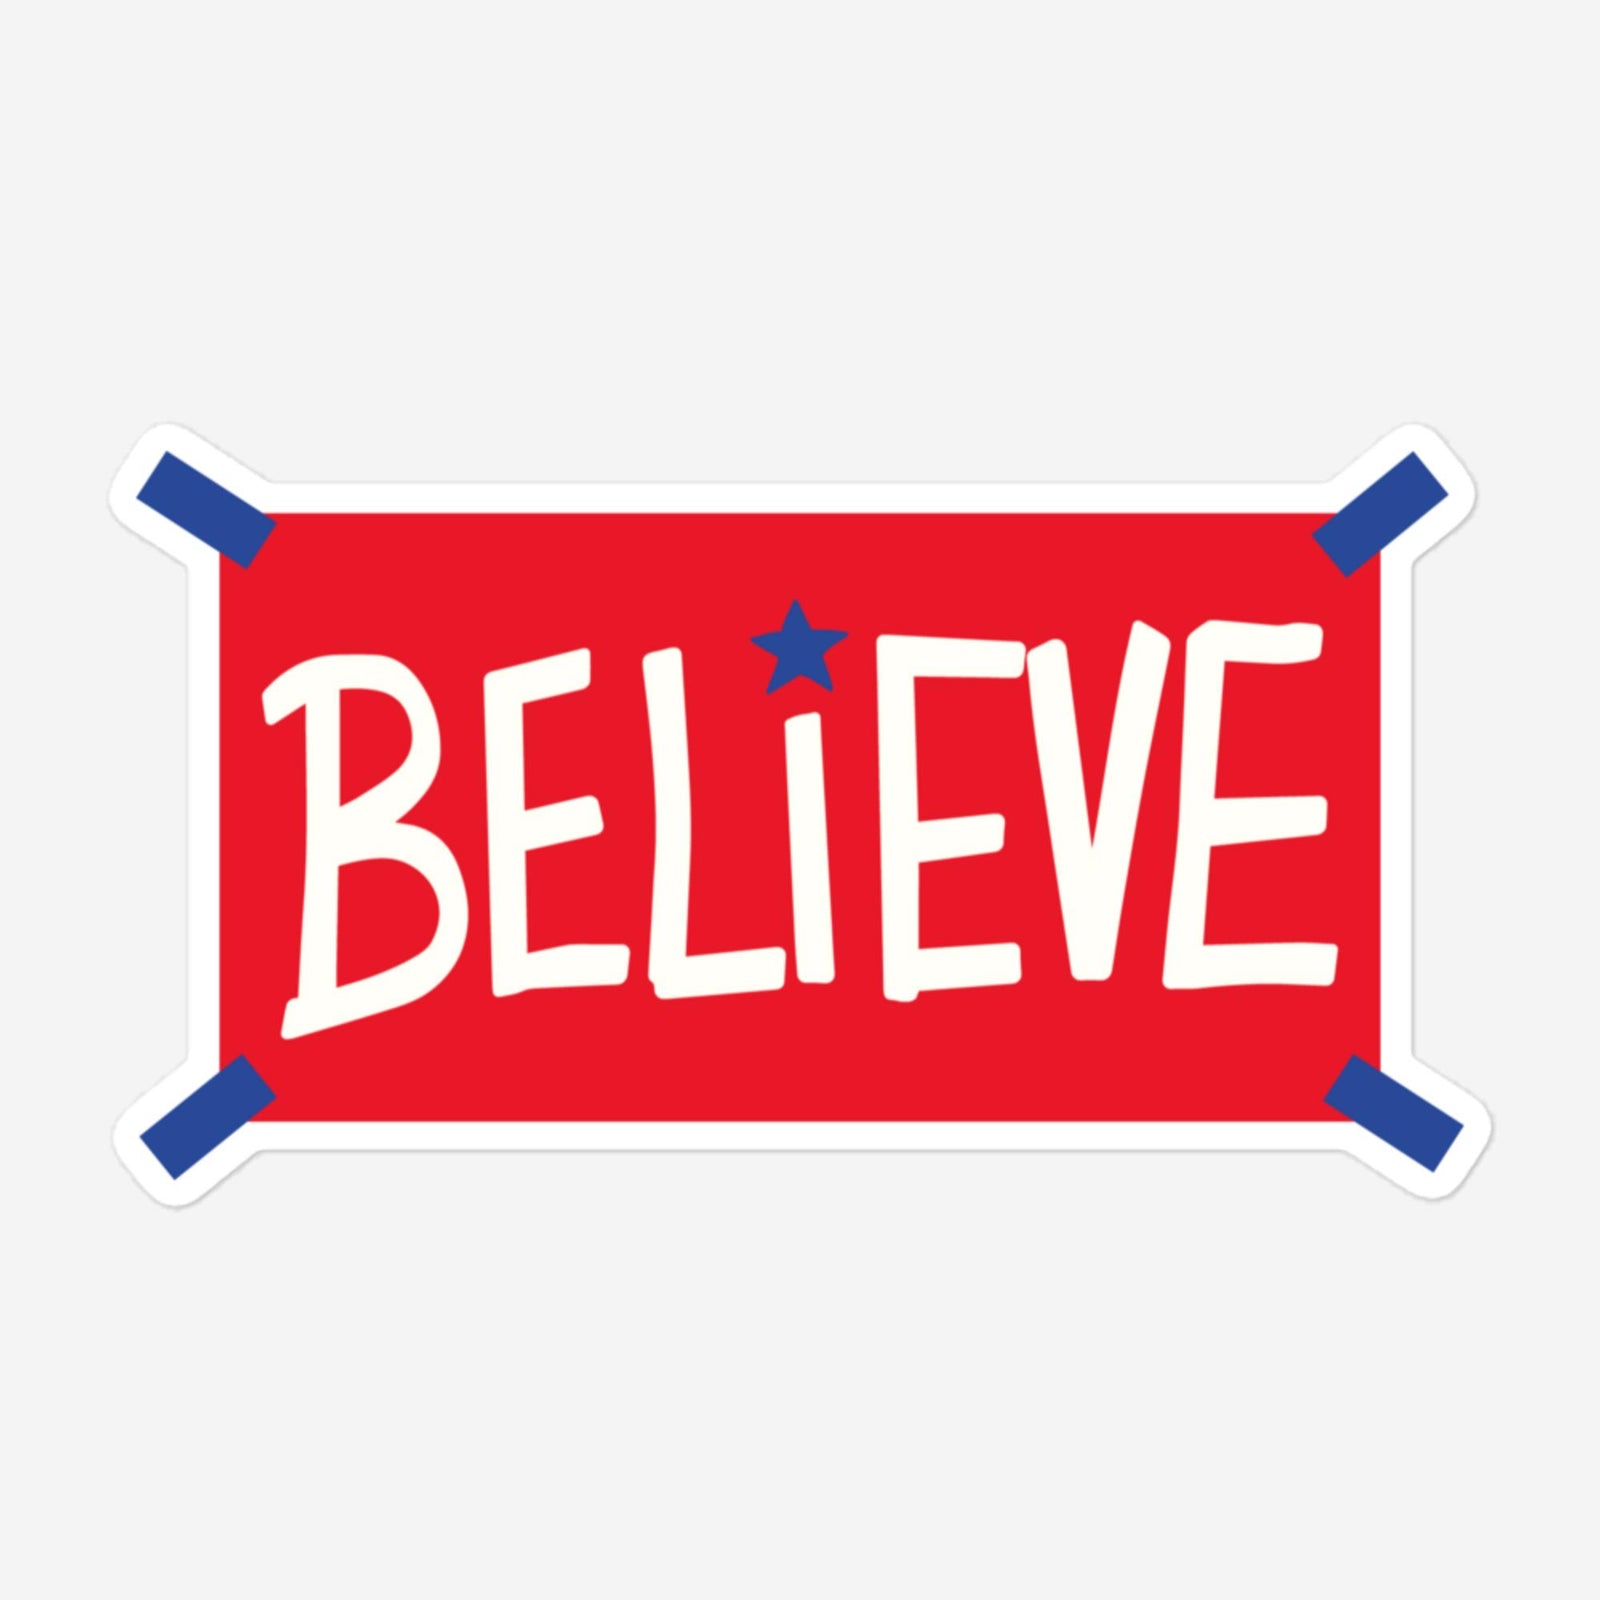 "Believe" Red Sticker